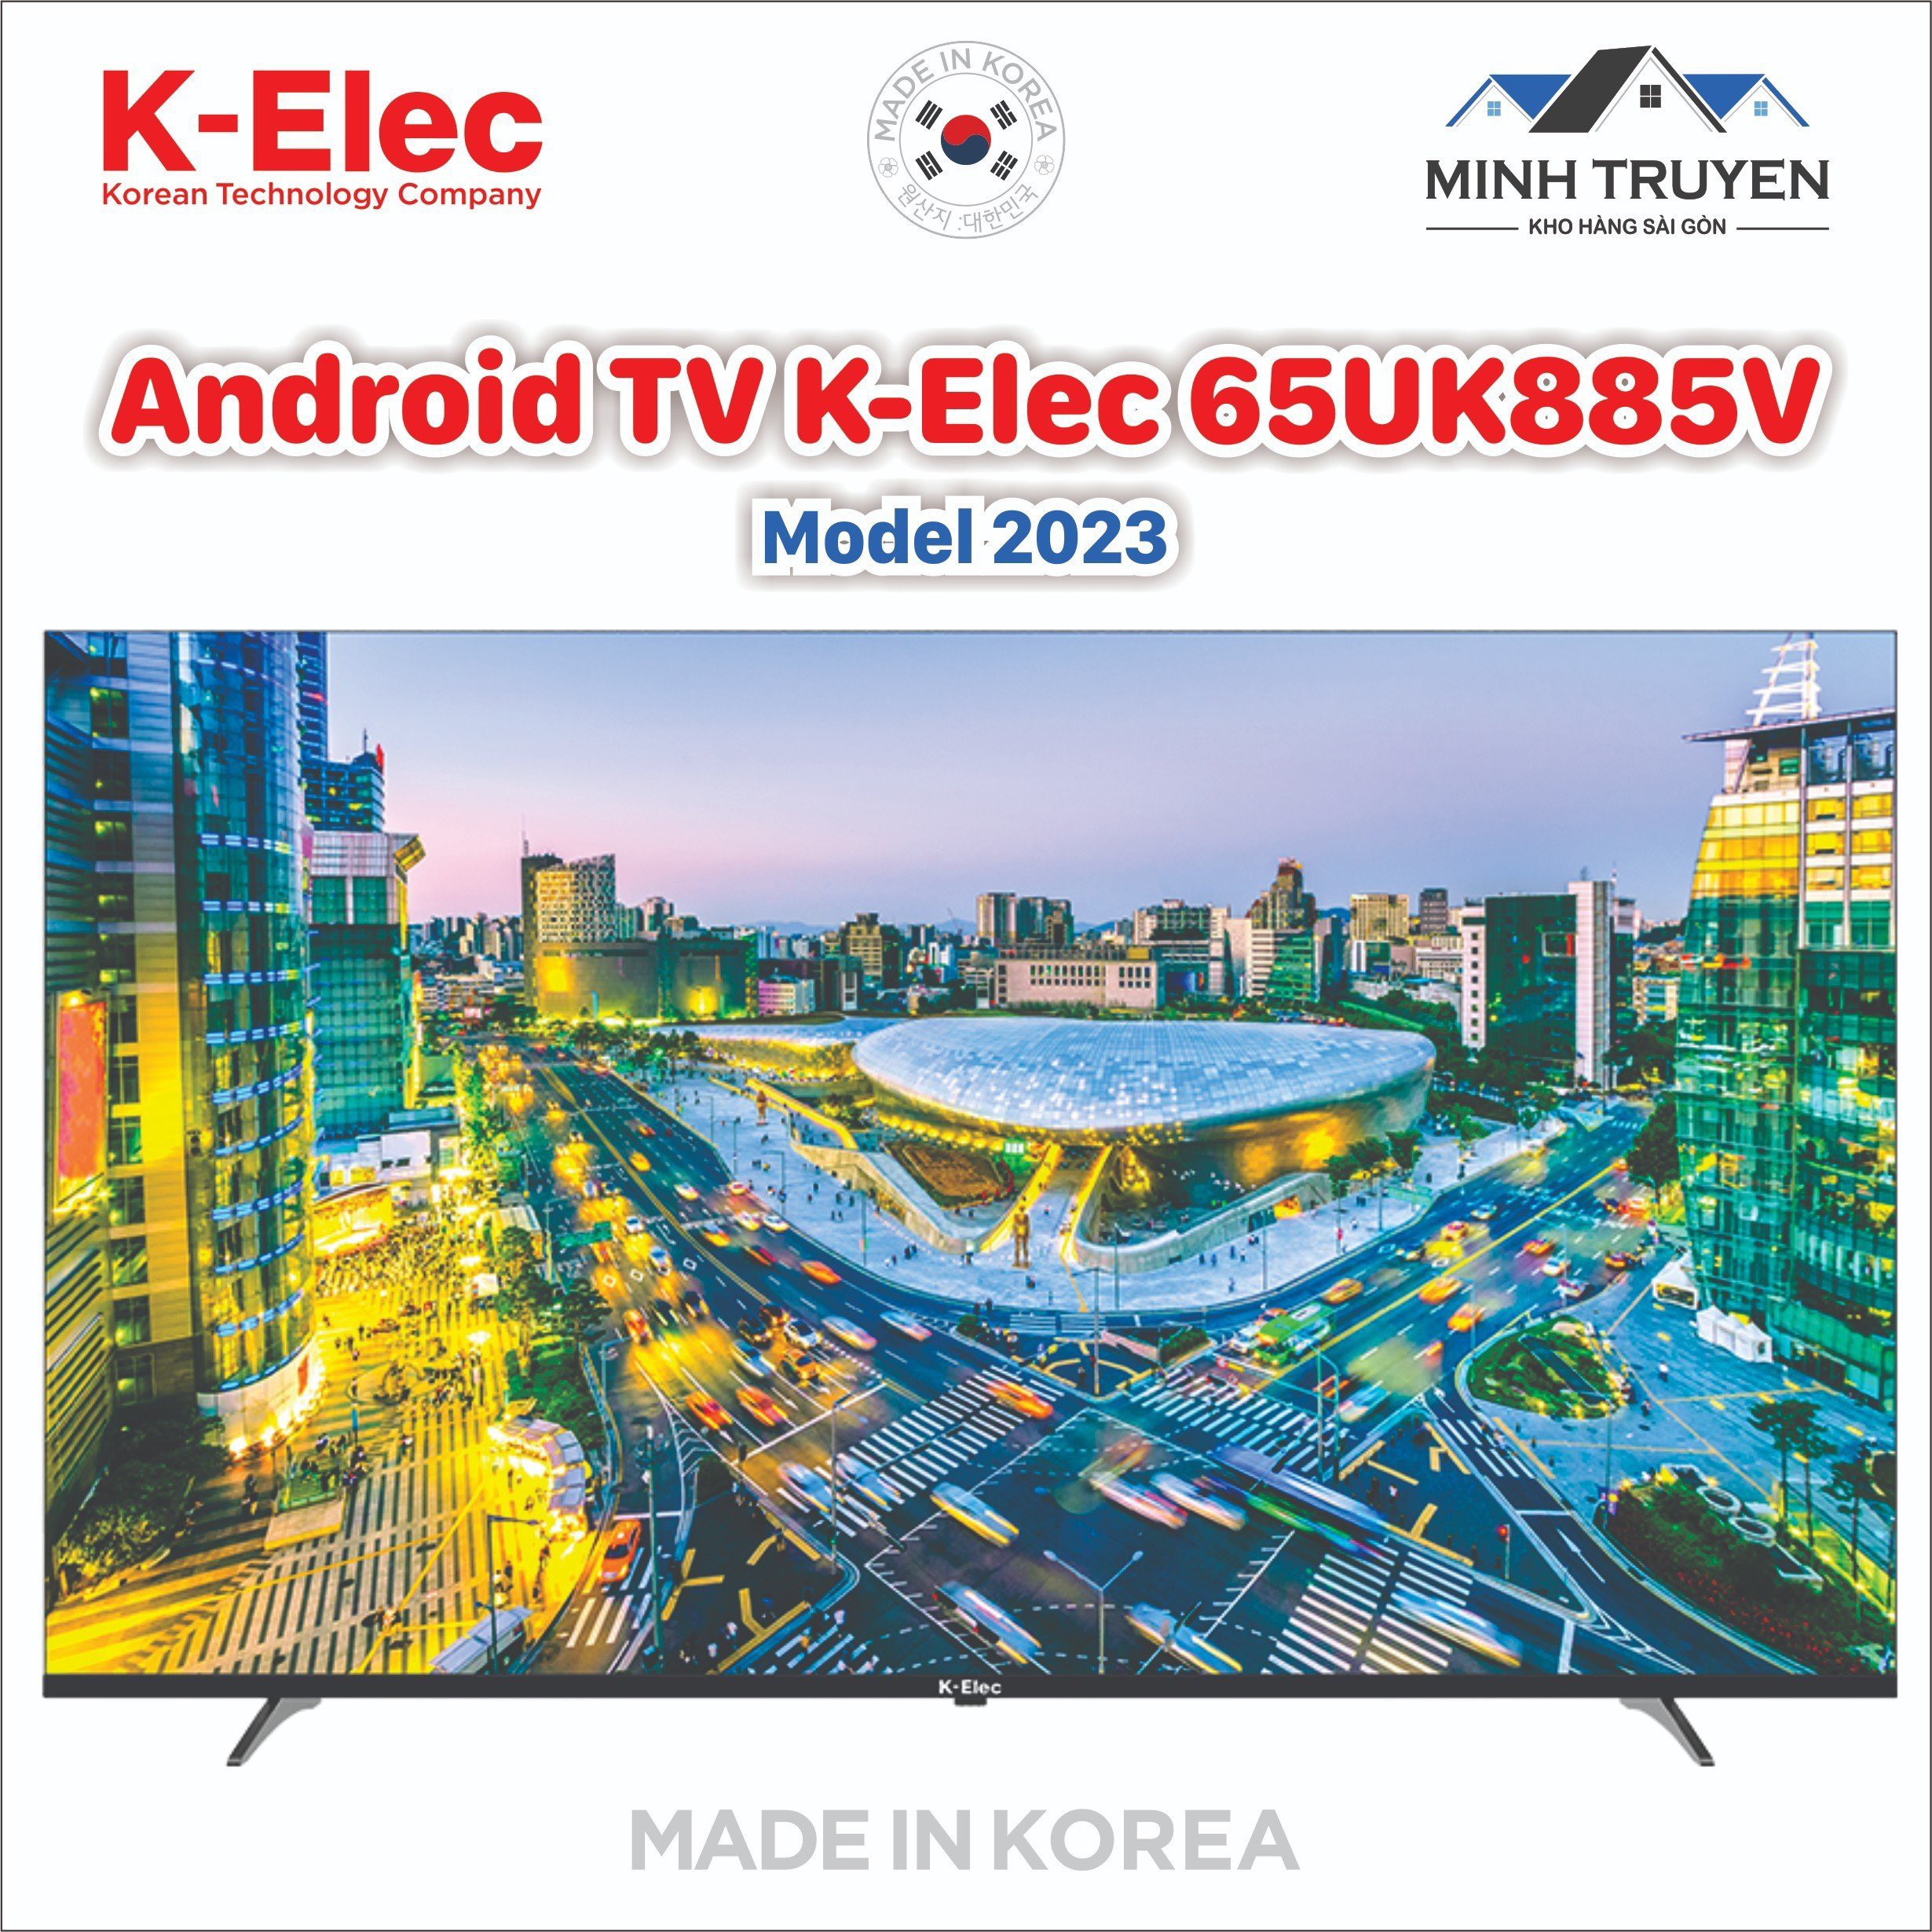 Android Tivi K-Elec 4K 65 inch 65UK885V (Mới 2023) - Thương hiệu Hàn Quốc - CHÍNH HÃNG 100%